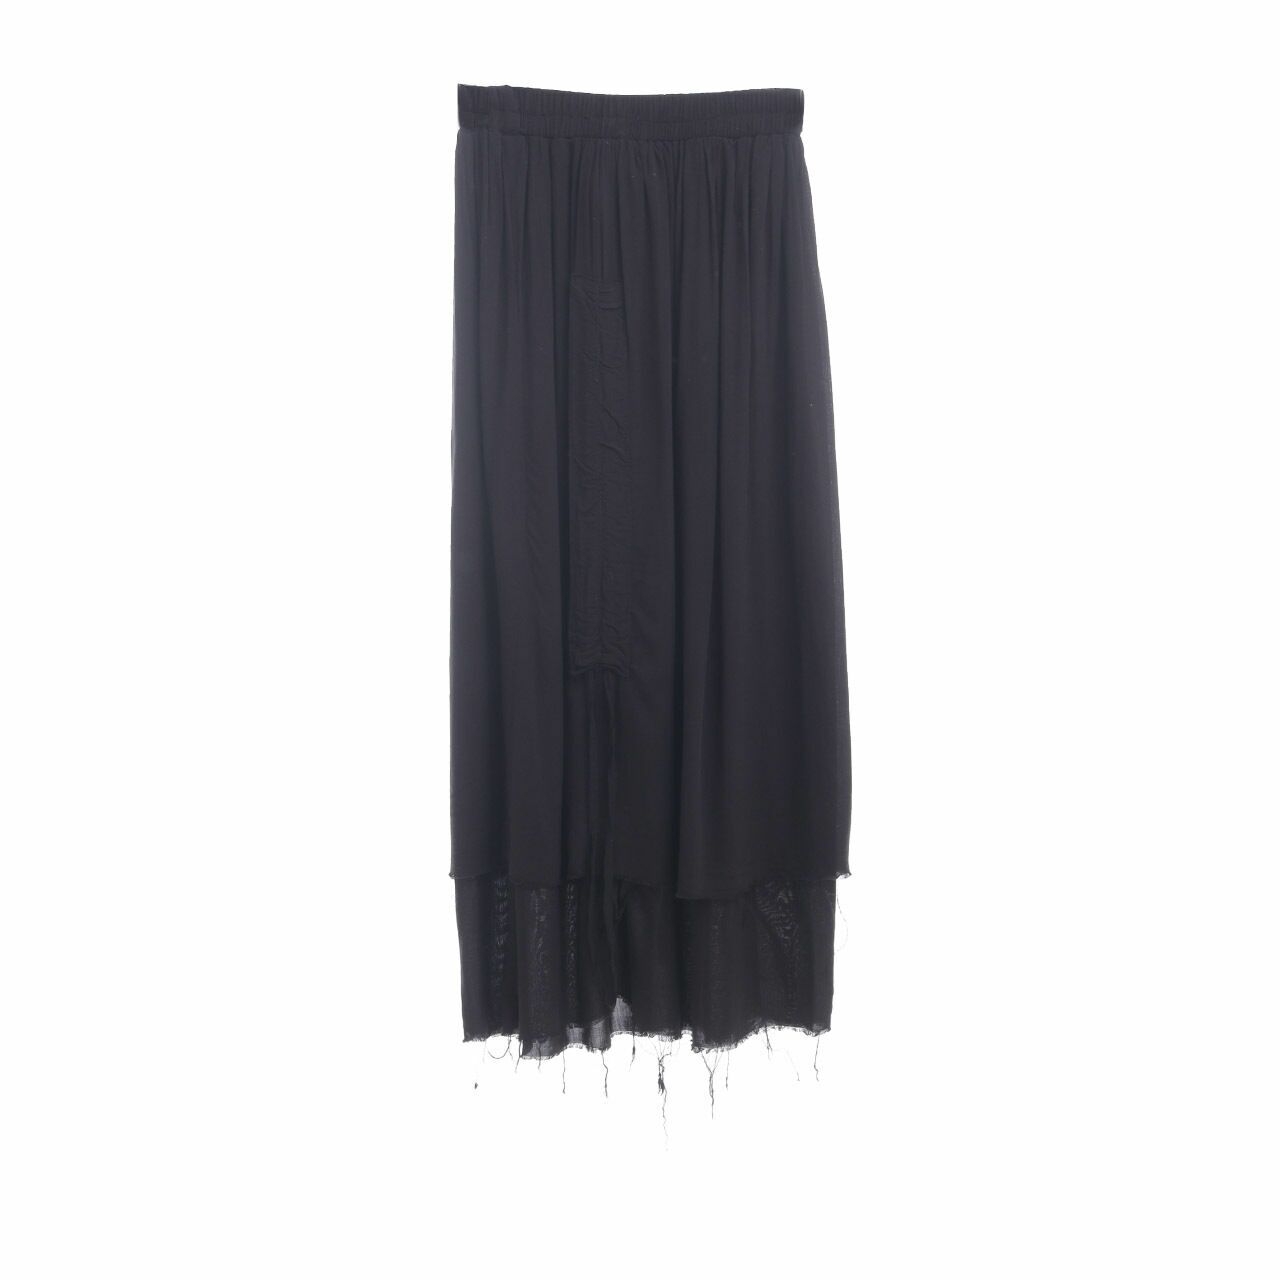 Aesthetic Pleasure Black Midi Skirt